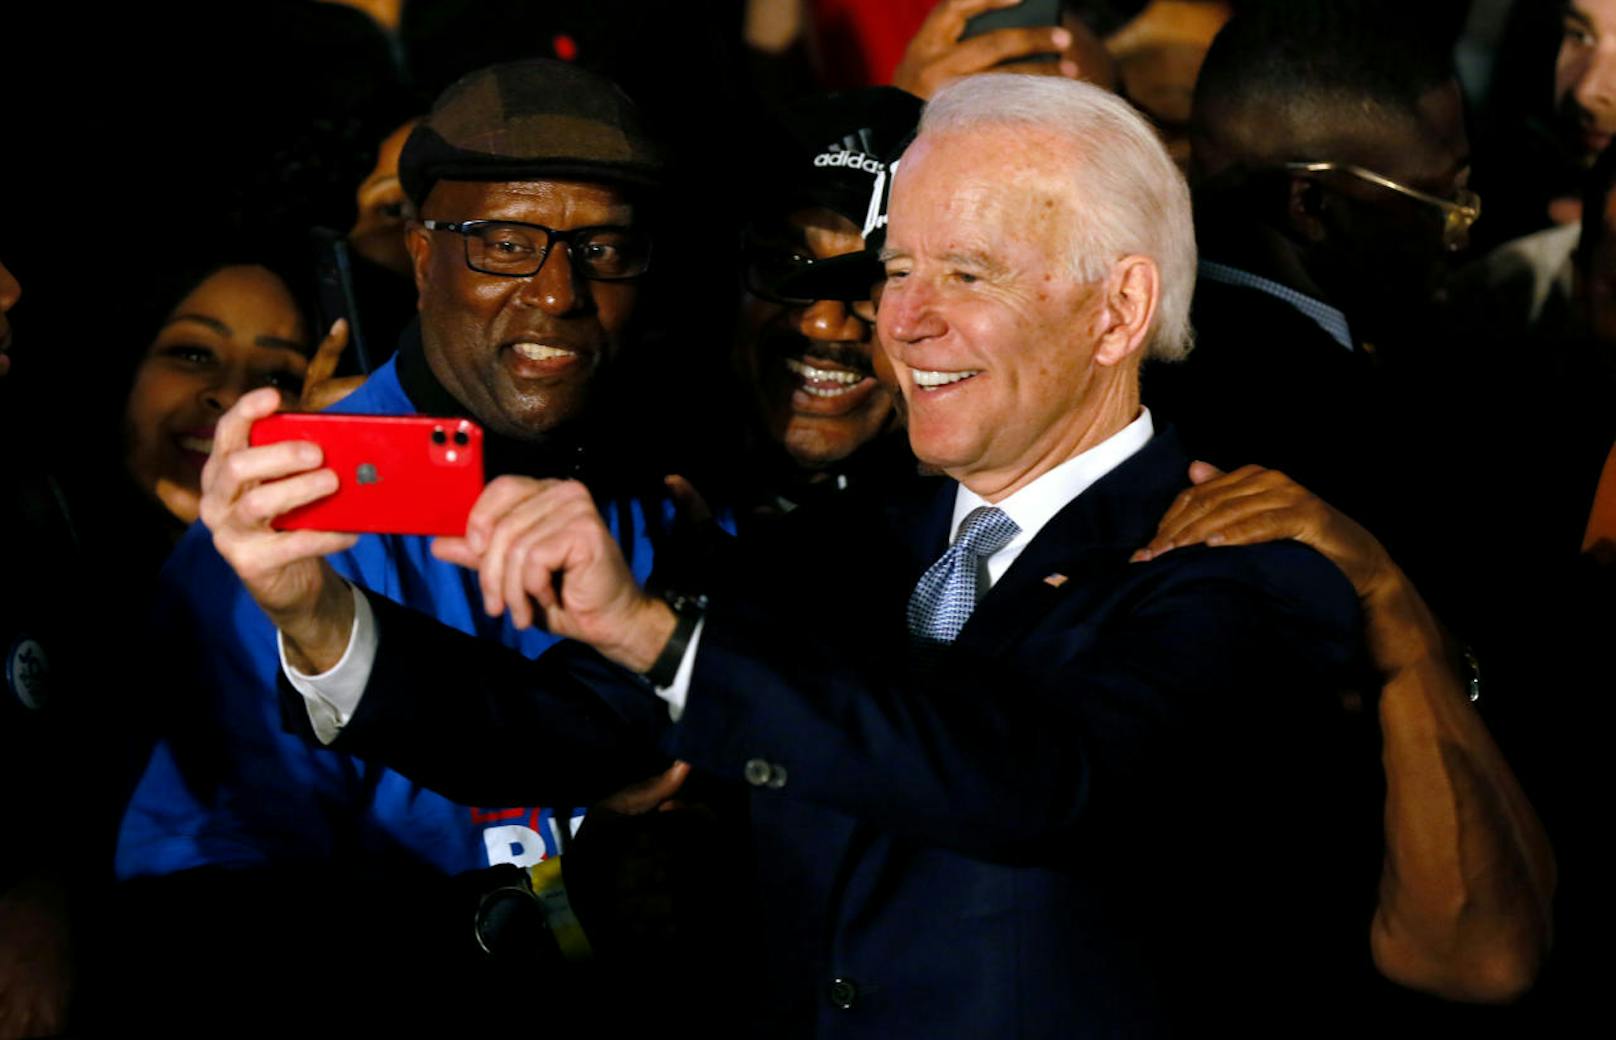 Der demokratische Präsidentschaftskandidat Joe Biden mit Unterstützern im US-Bundesstaat South Carolina.